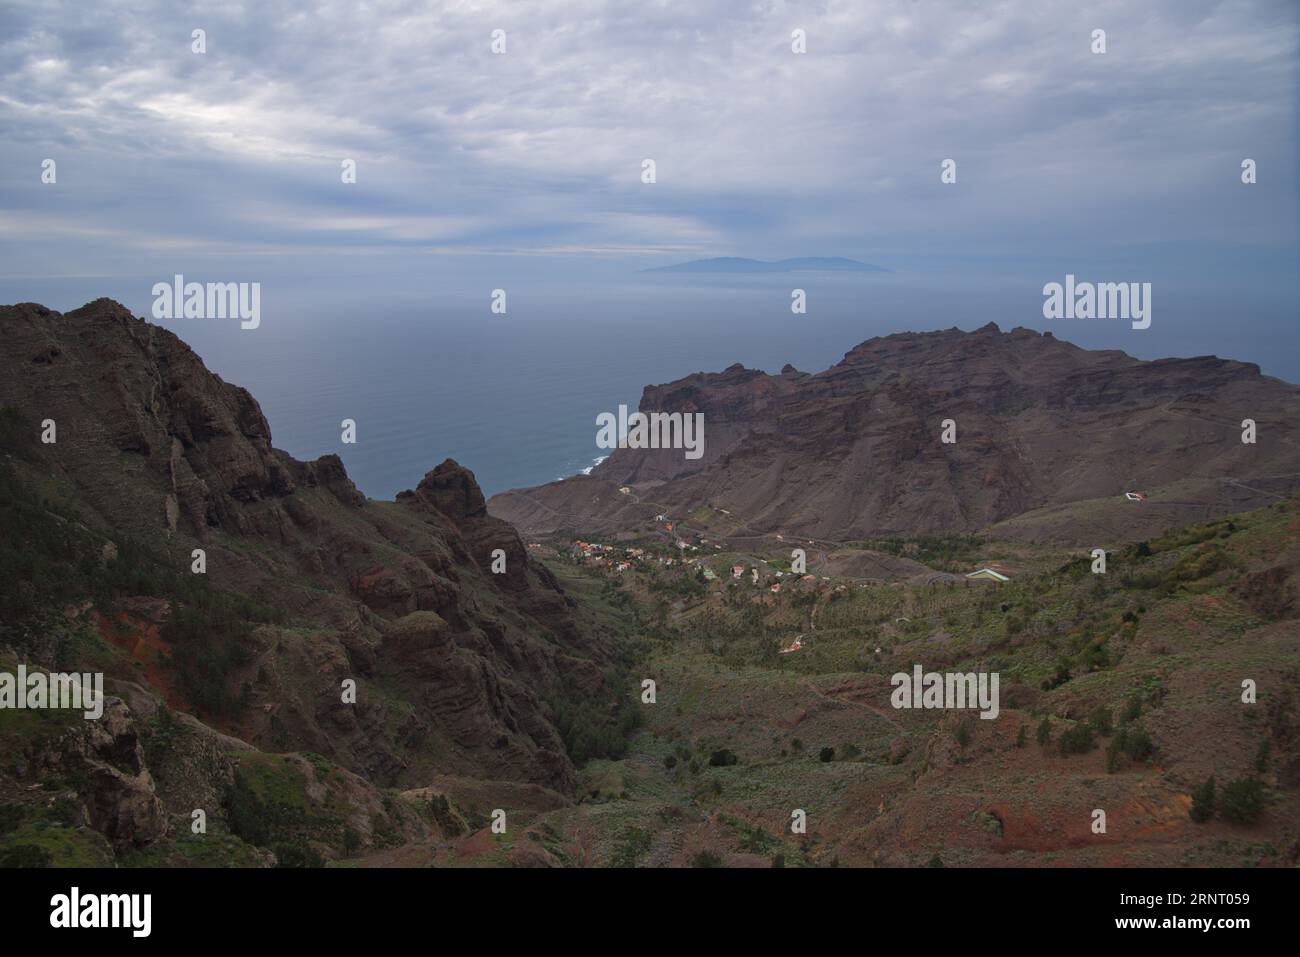 The island of La Palma in the background seen from the island of La Gomera. La isla de La Palma al fondo vista desde la isla de La Gomera. Stock Photo